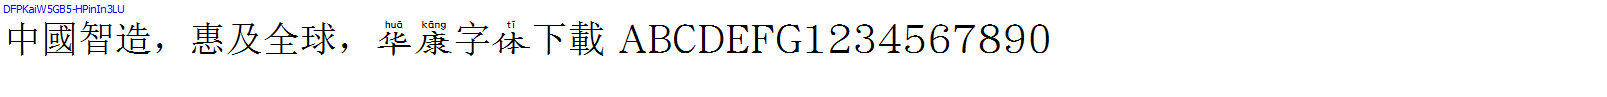 華康字體DFPKaiW5GB5-HPinIn3LU.TTF